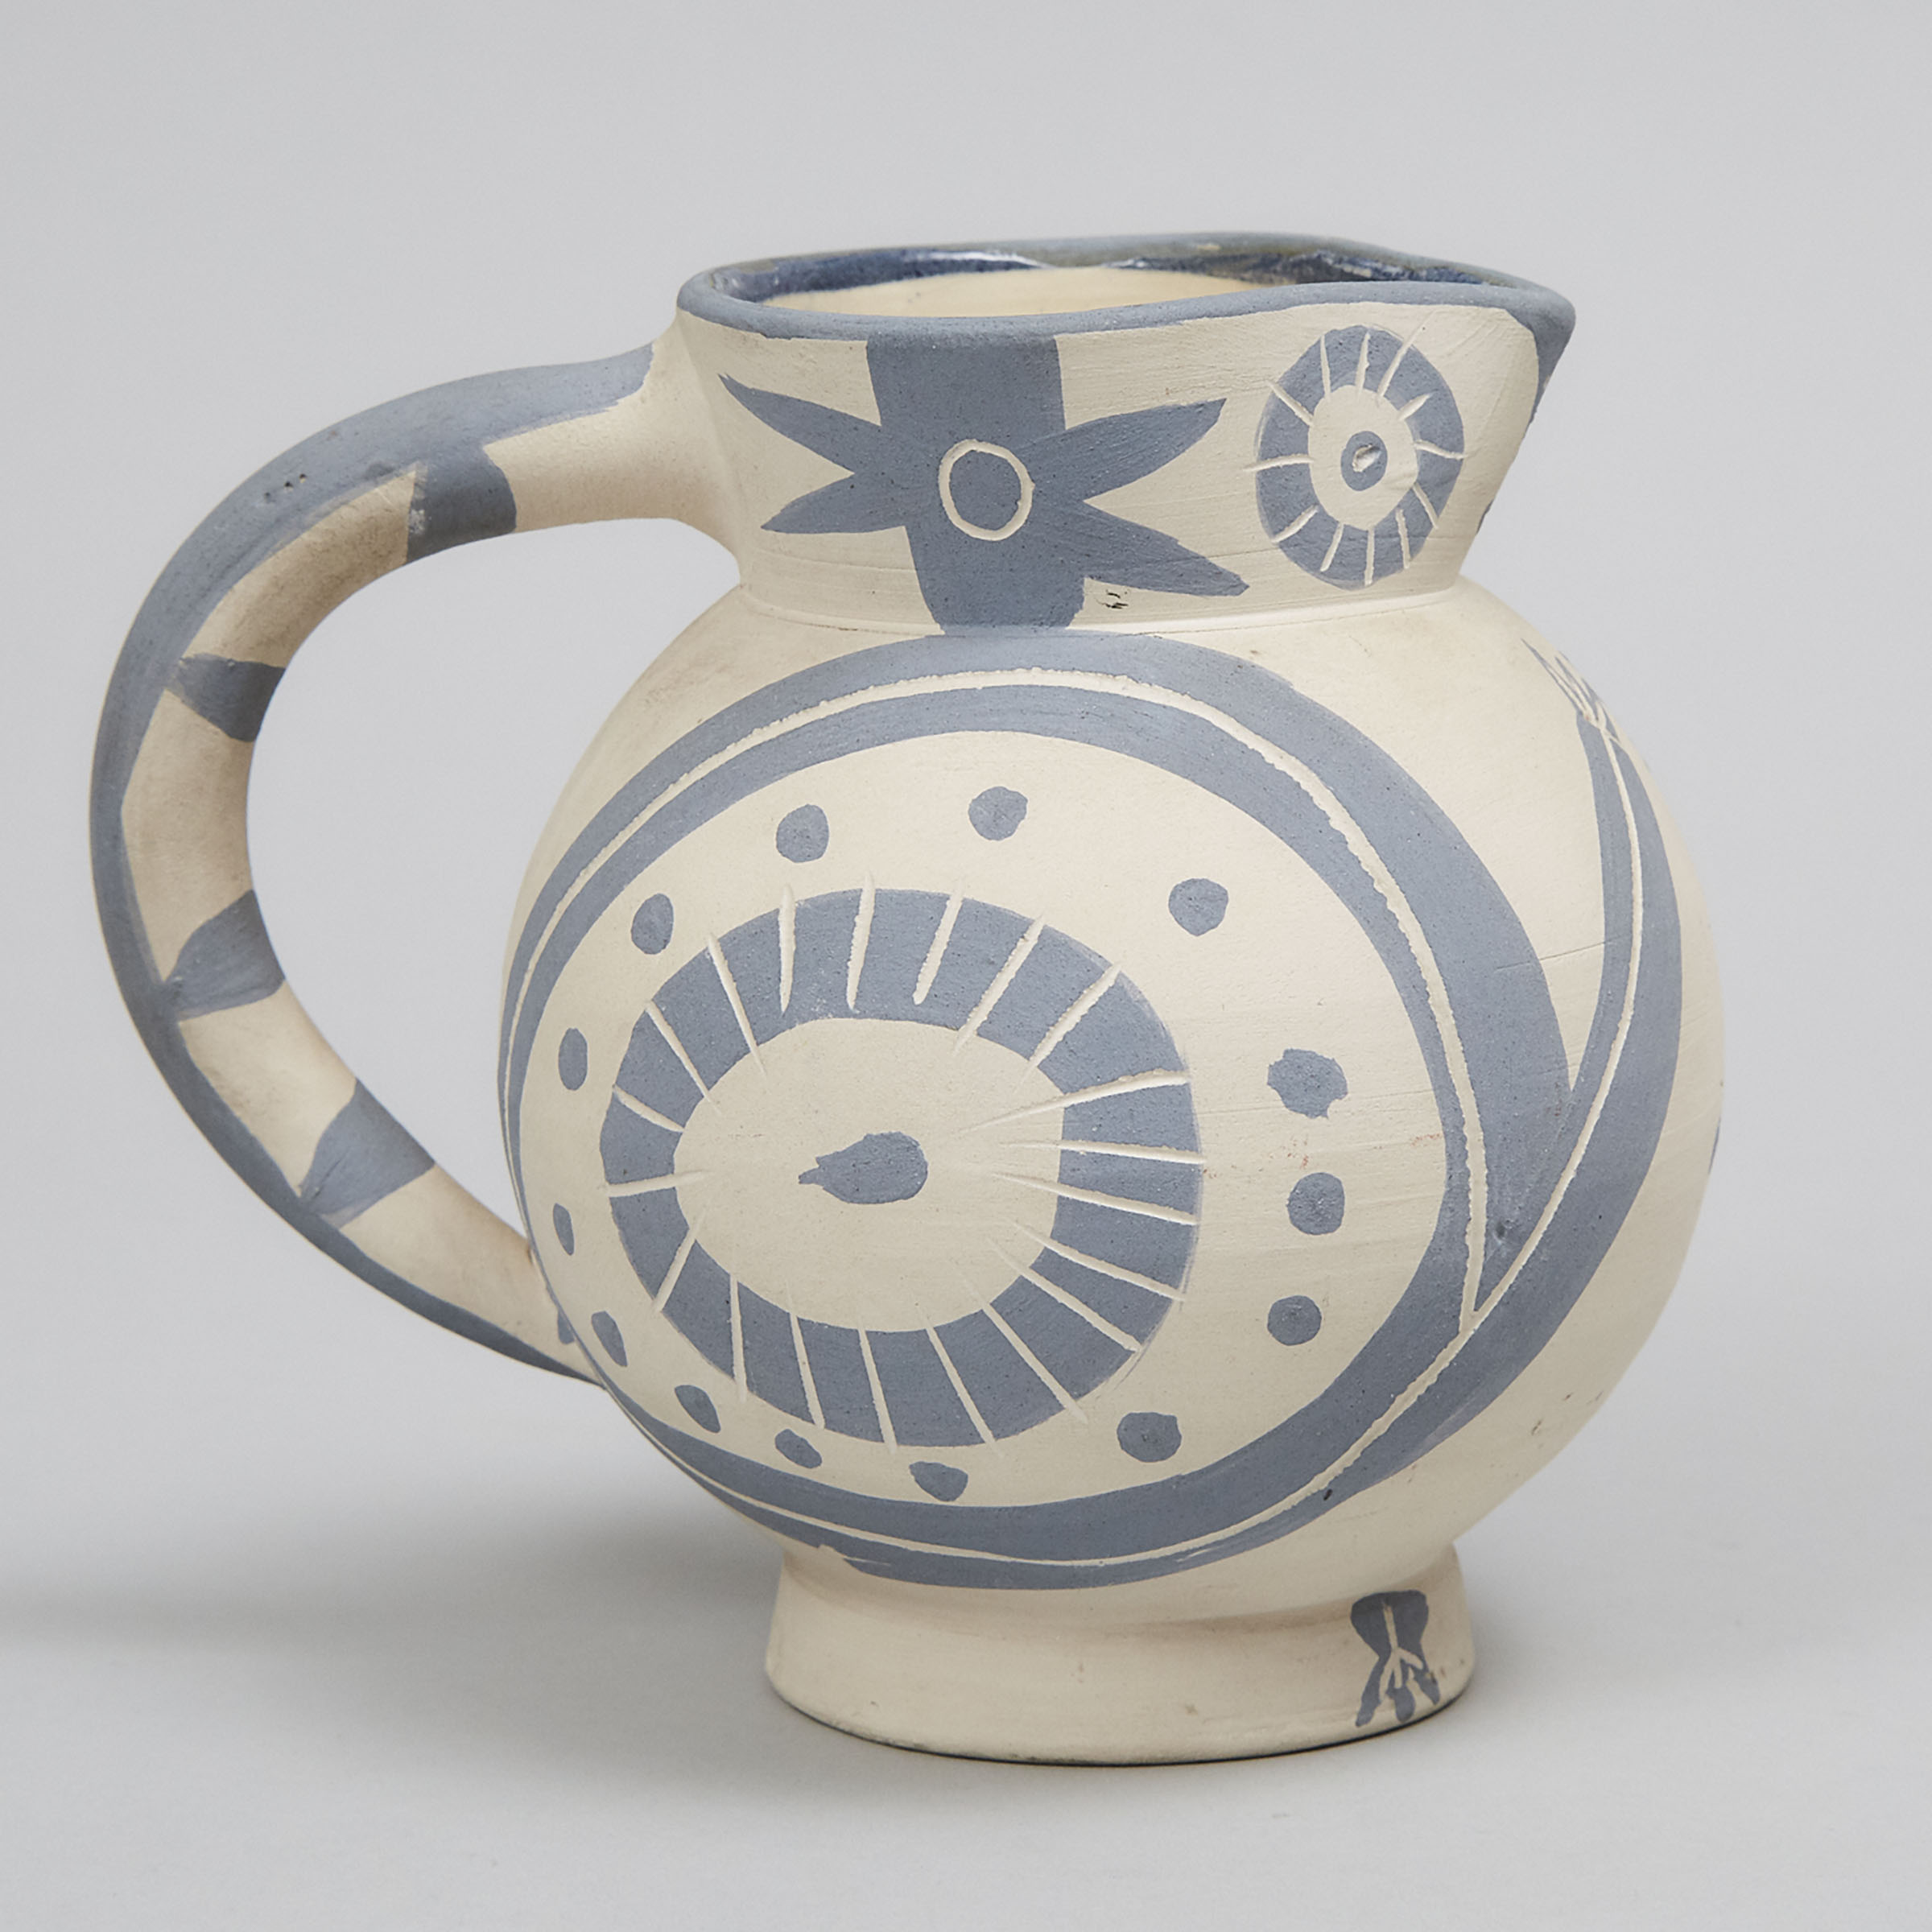 ‘Petite Chouette’, Pablo Picasso (1881-1973), Ceramic Jug, c.1949